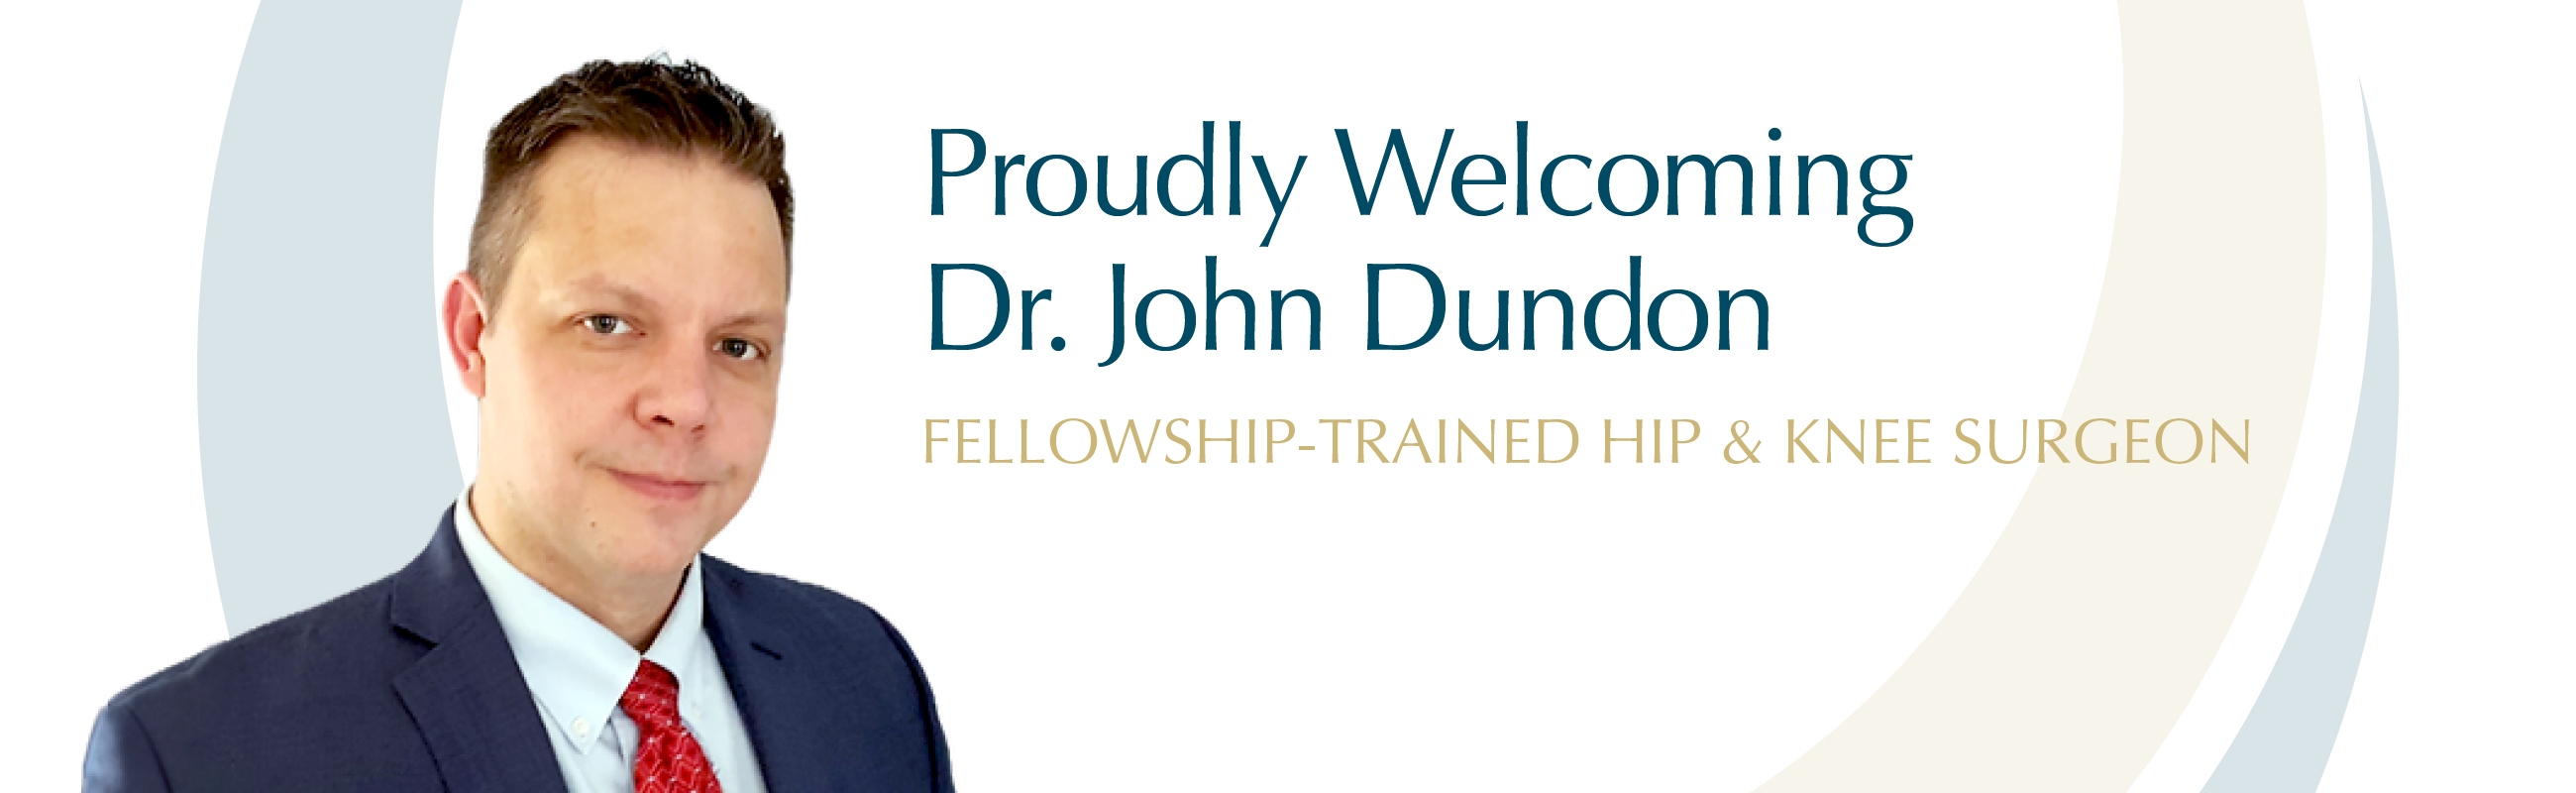 Proudly Welcoming Dr. John Dundon